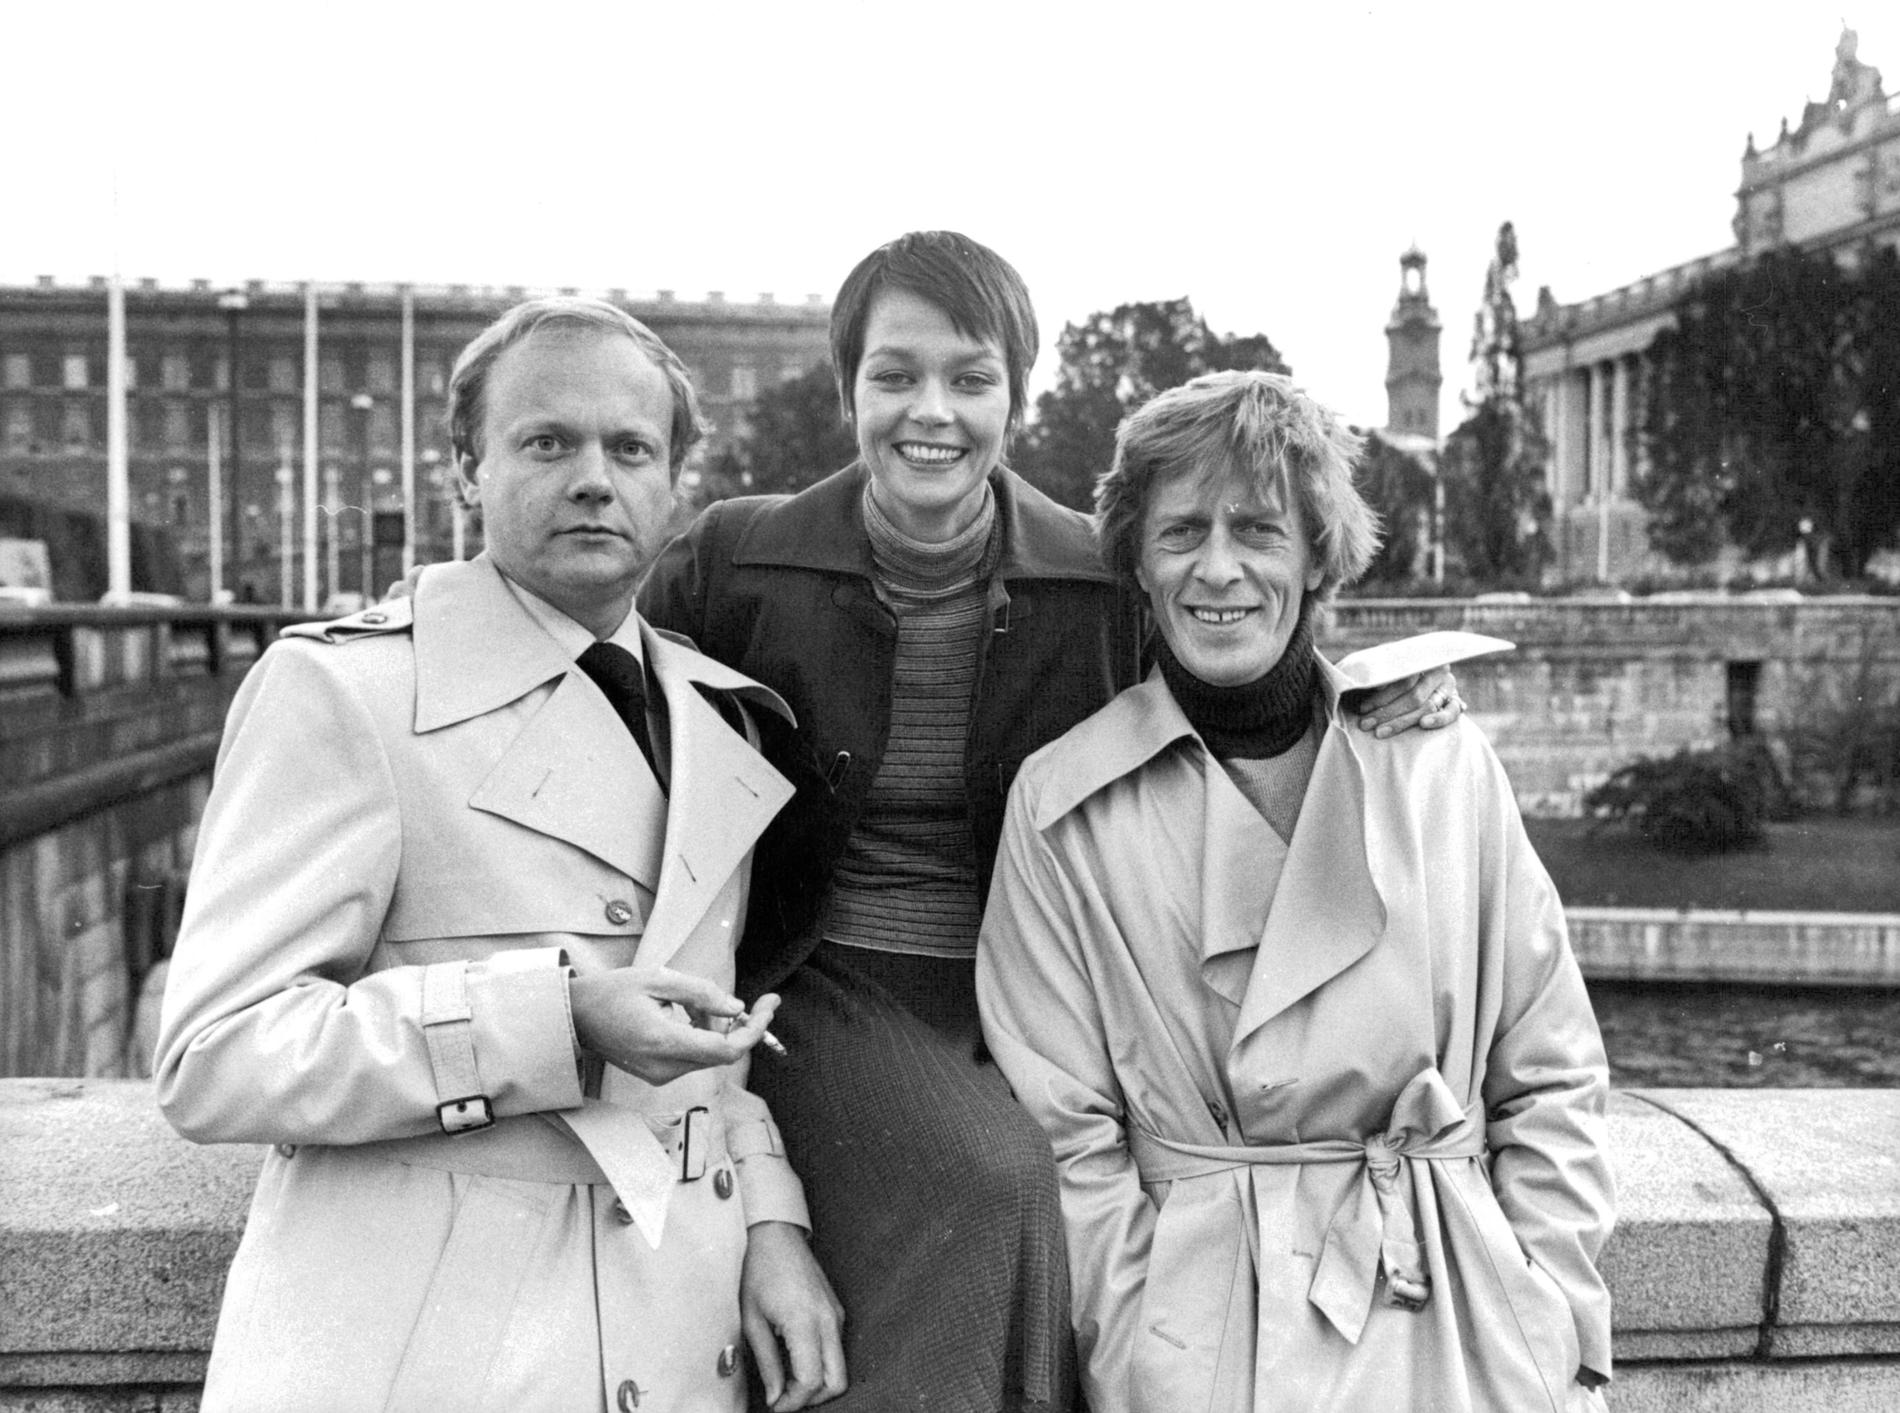 Regissören Mats Arehn, Carolyn Seymour och Thomas Hellberg i samband med inspelningen av filmen "Uppdraget" 1976.